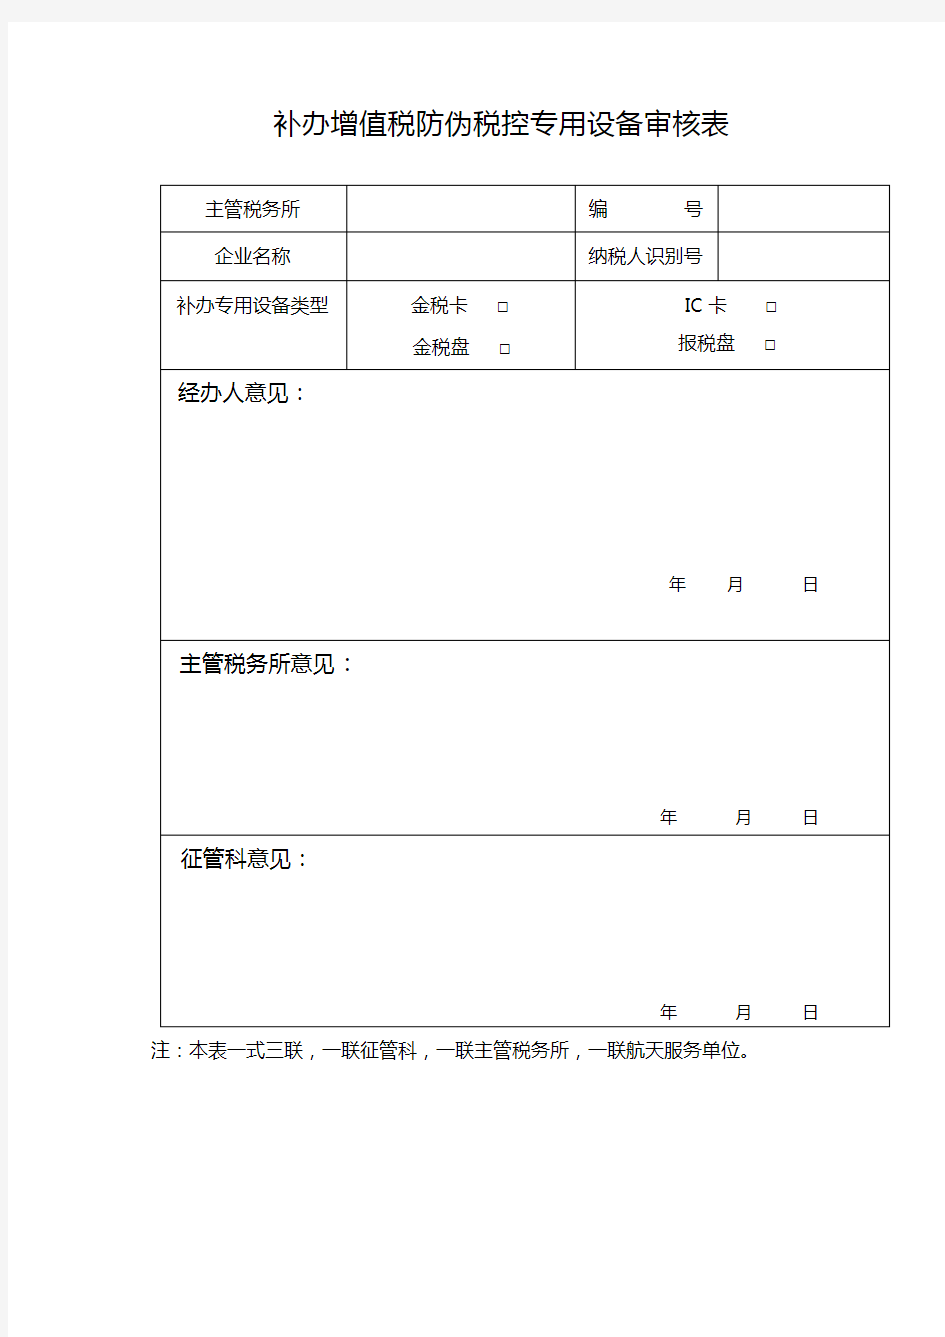 补办增值税防伪税控专用设备审核表【模板】